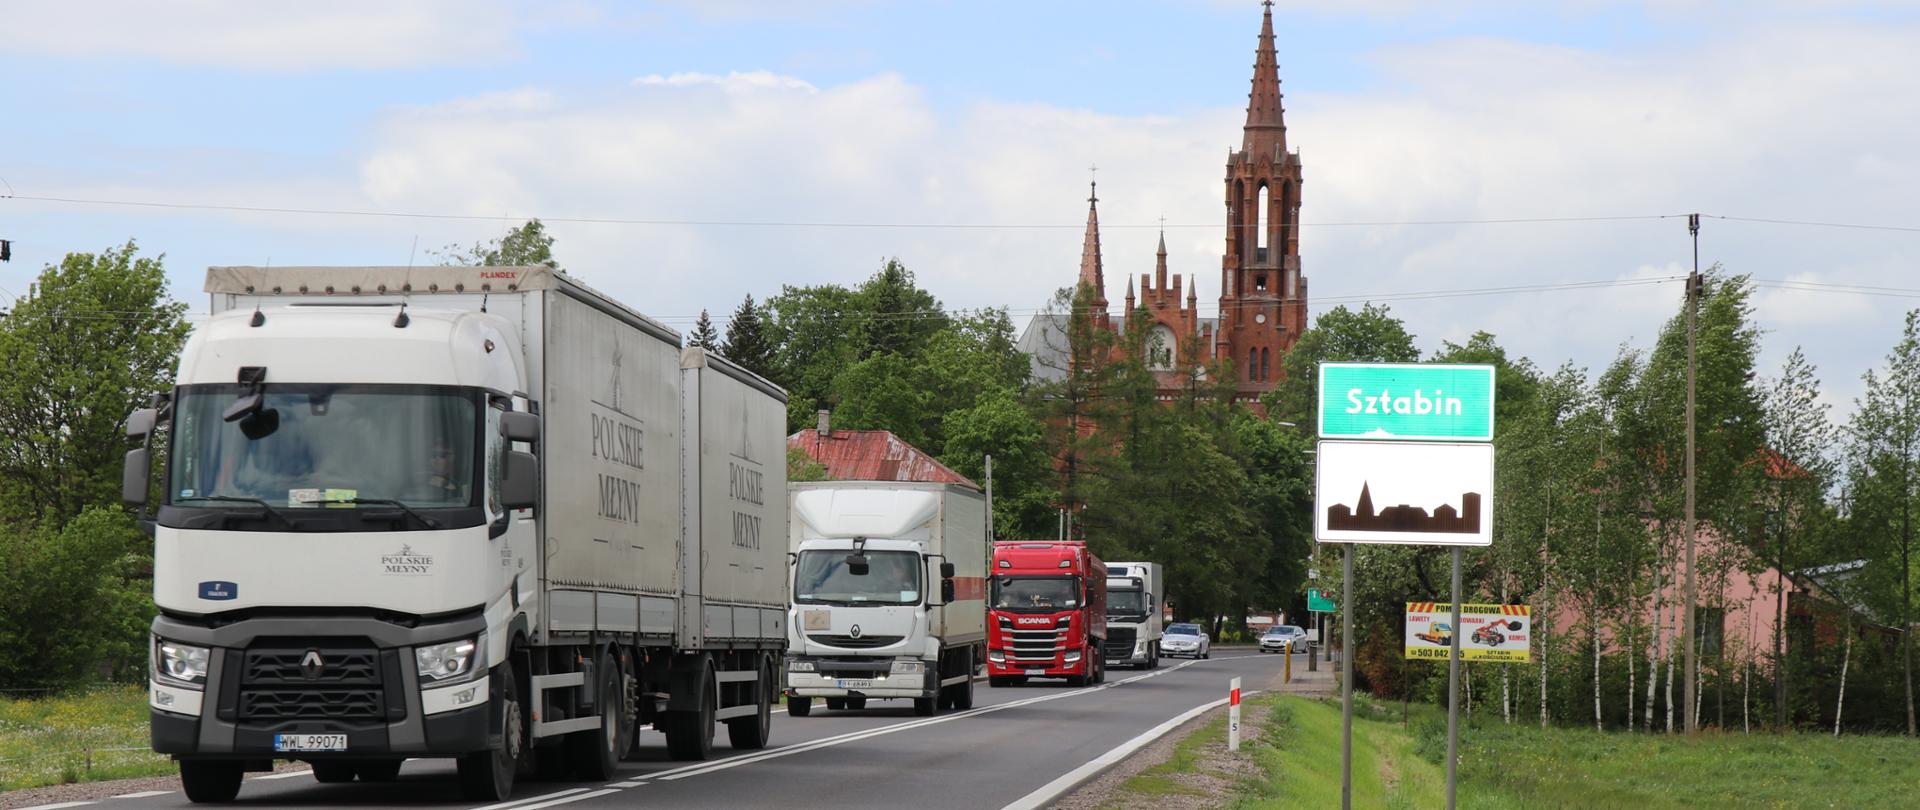 Ciąg czterech samochodów ciężarowych na jednojezdniowej drodze. Po prawej stronie znak z nazwą miejscowości Sztabin i oznaczeniem terenu zabudowanego, w tle wieża kościelna